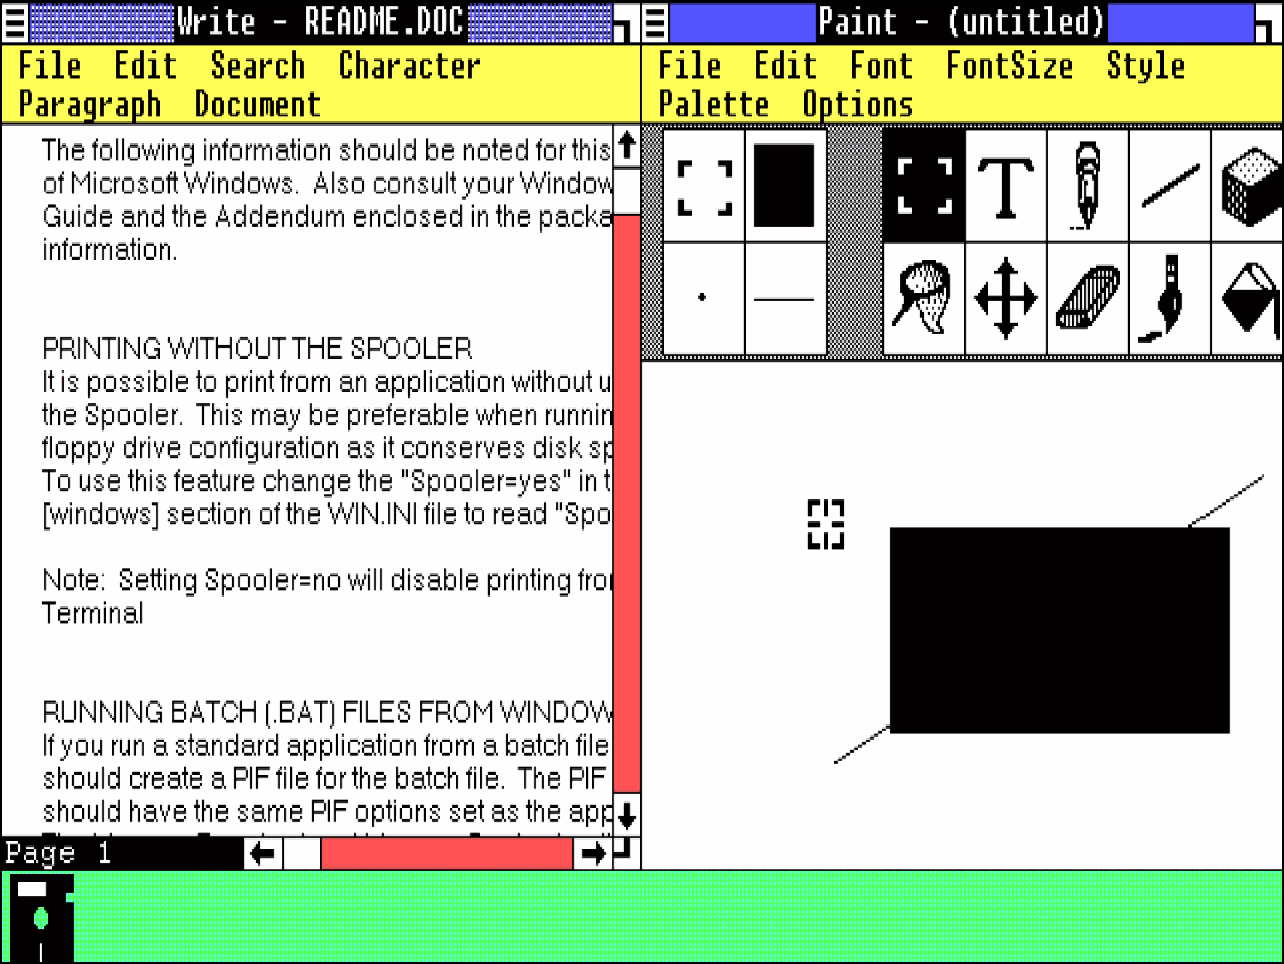 Microsoft Windows Version 1.01 mit geöffneten Fenstern für Write und Paint, unten minimiert die MS-DOS-Executive